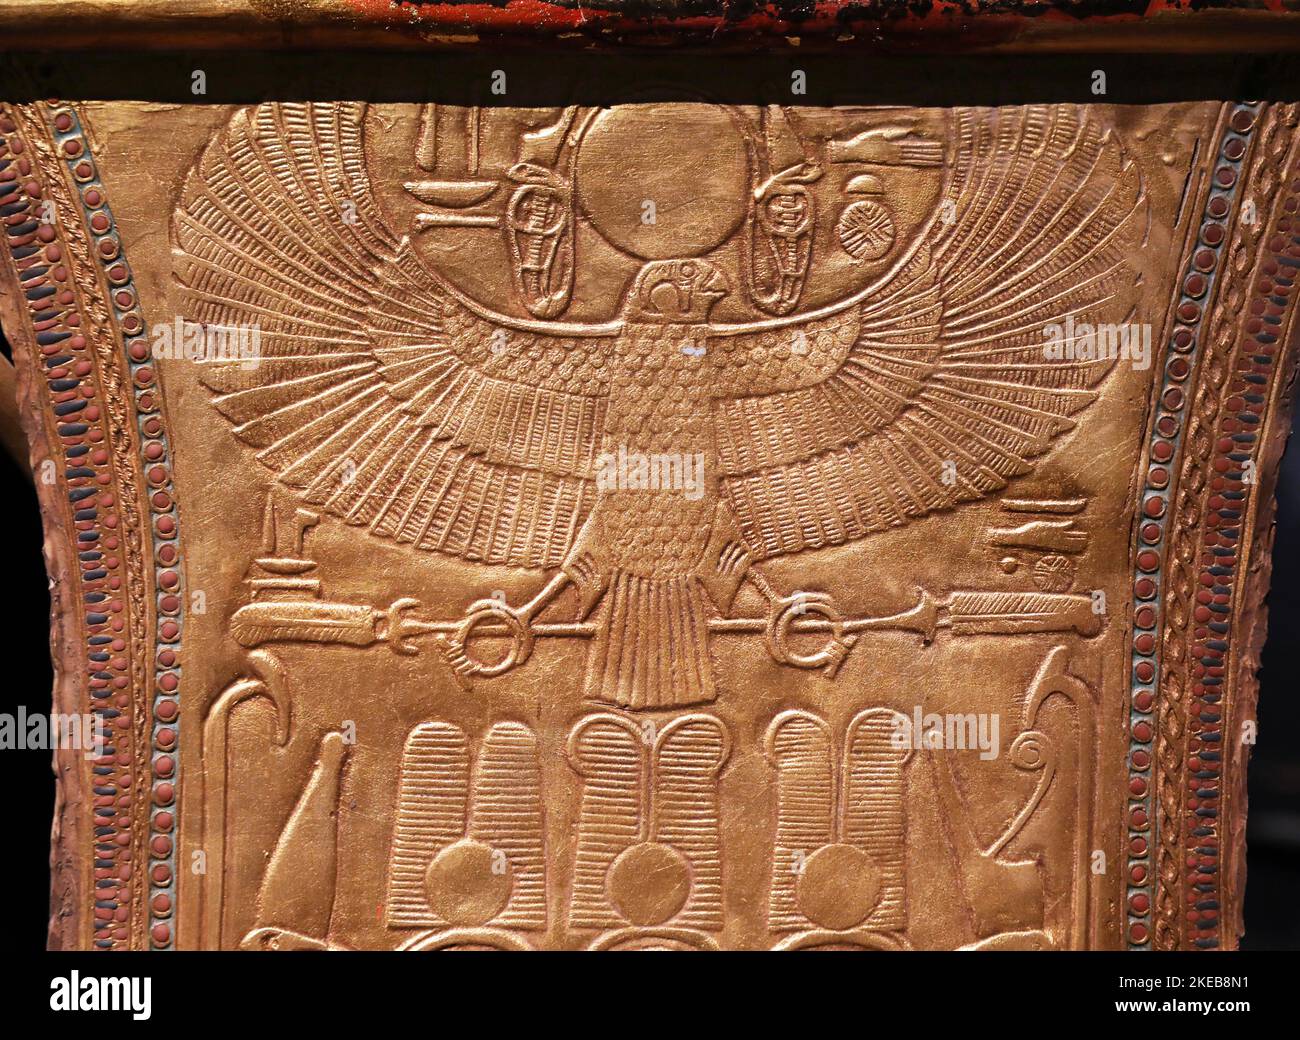 Detalle del kart ceremonial de Tutankhamon encontrado en su tumba Foto de stock